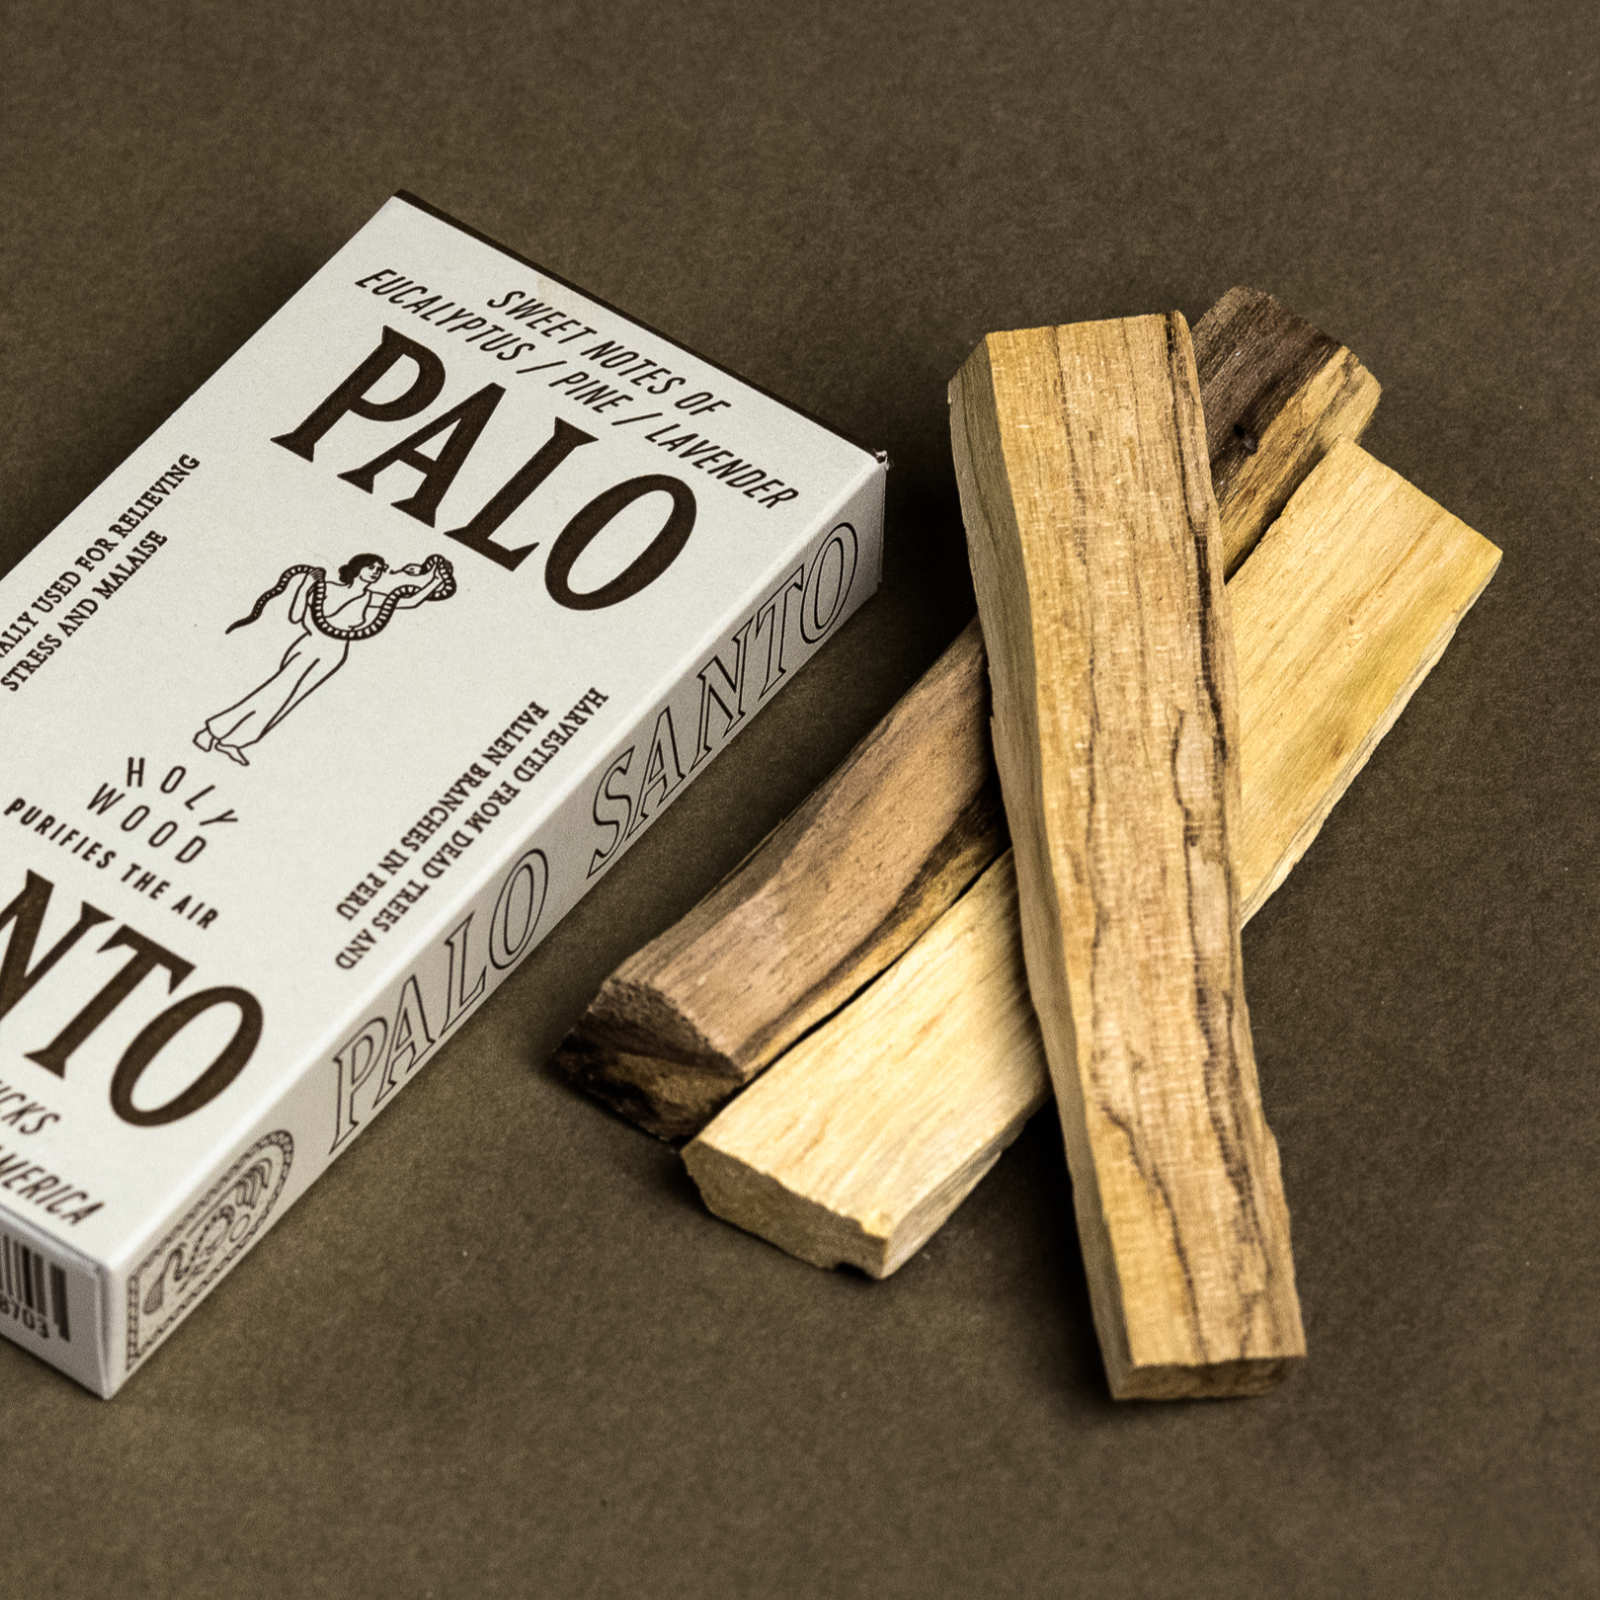 Palo Santo "Holy Wood"